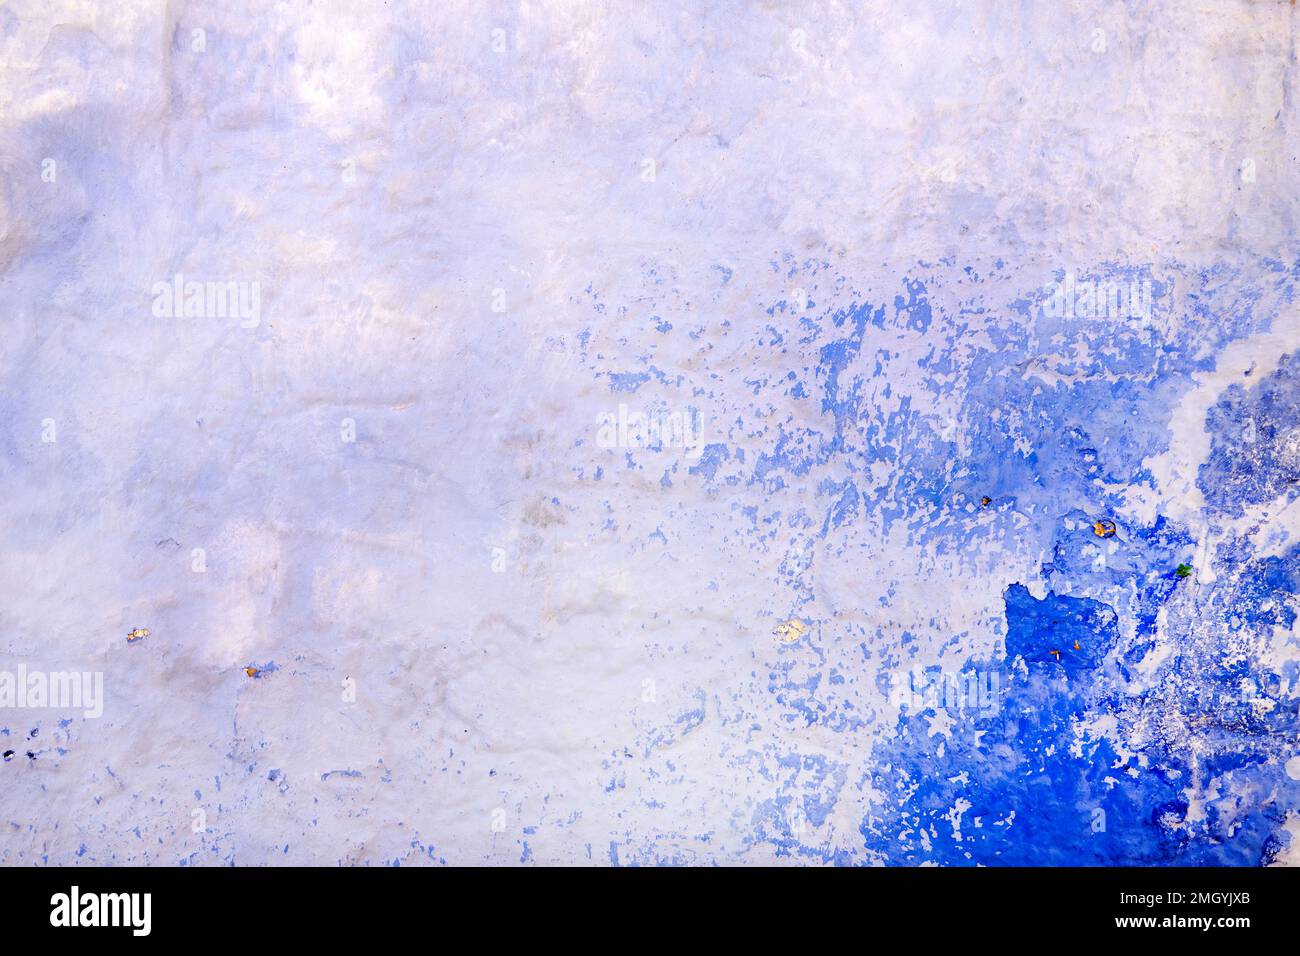 Ein einfaches Hintergrund- oder Tischbild. Das Foto zeigt eine raue gerenderte Wand. Weiß und blau mit mediterranem Flair Stockfoto